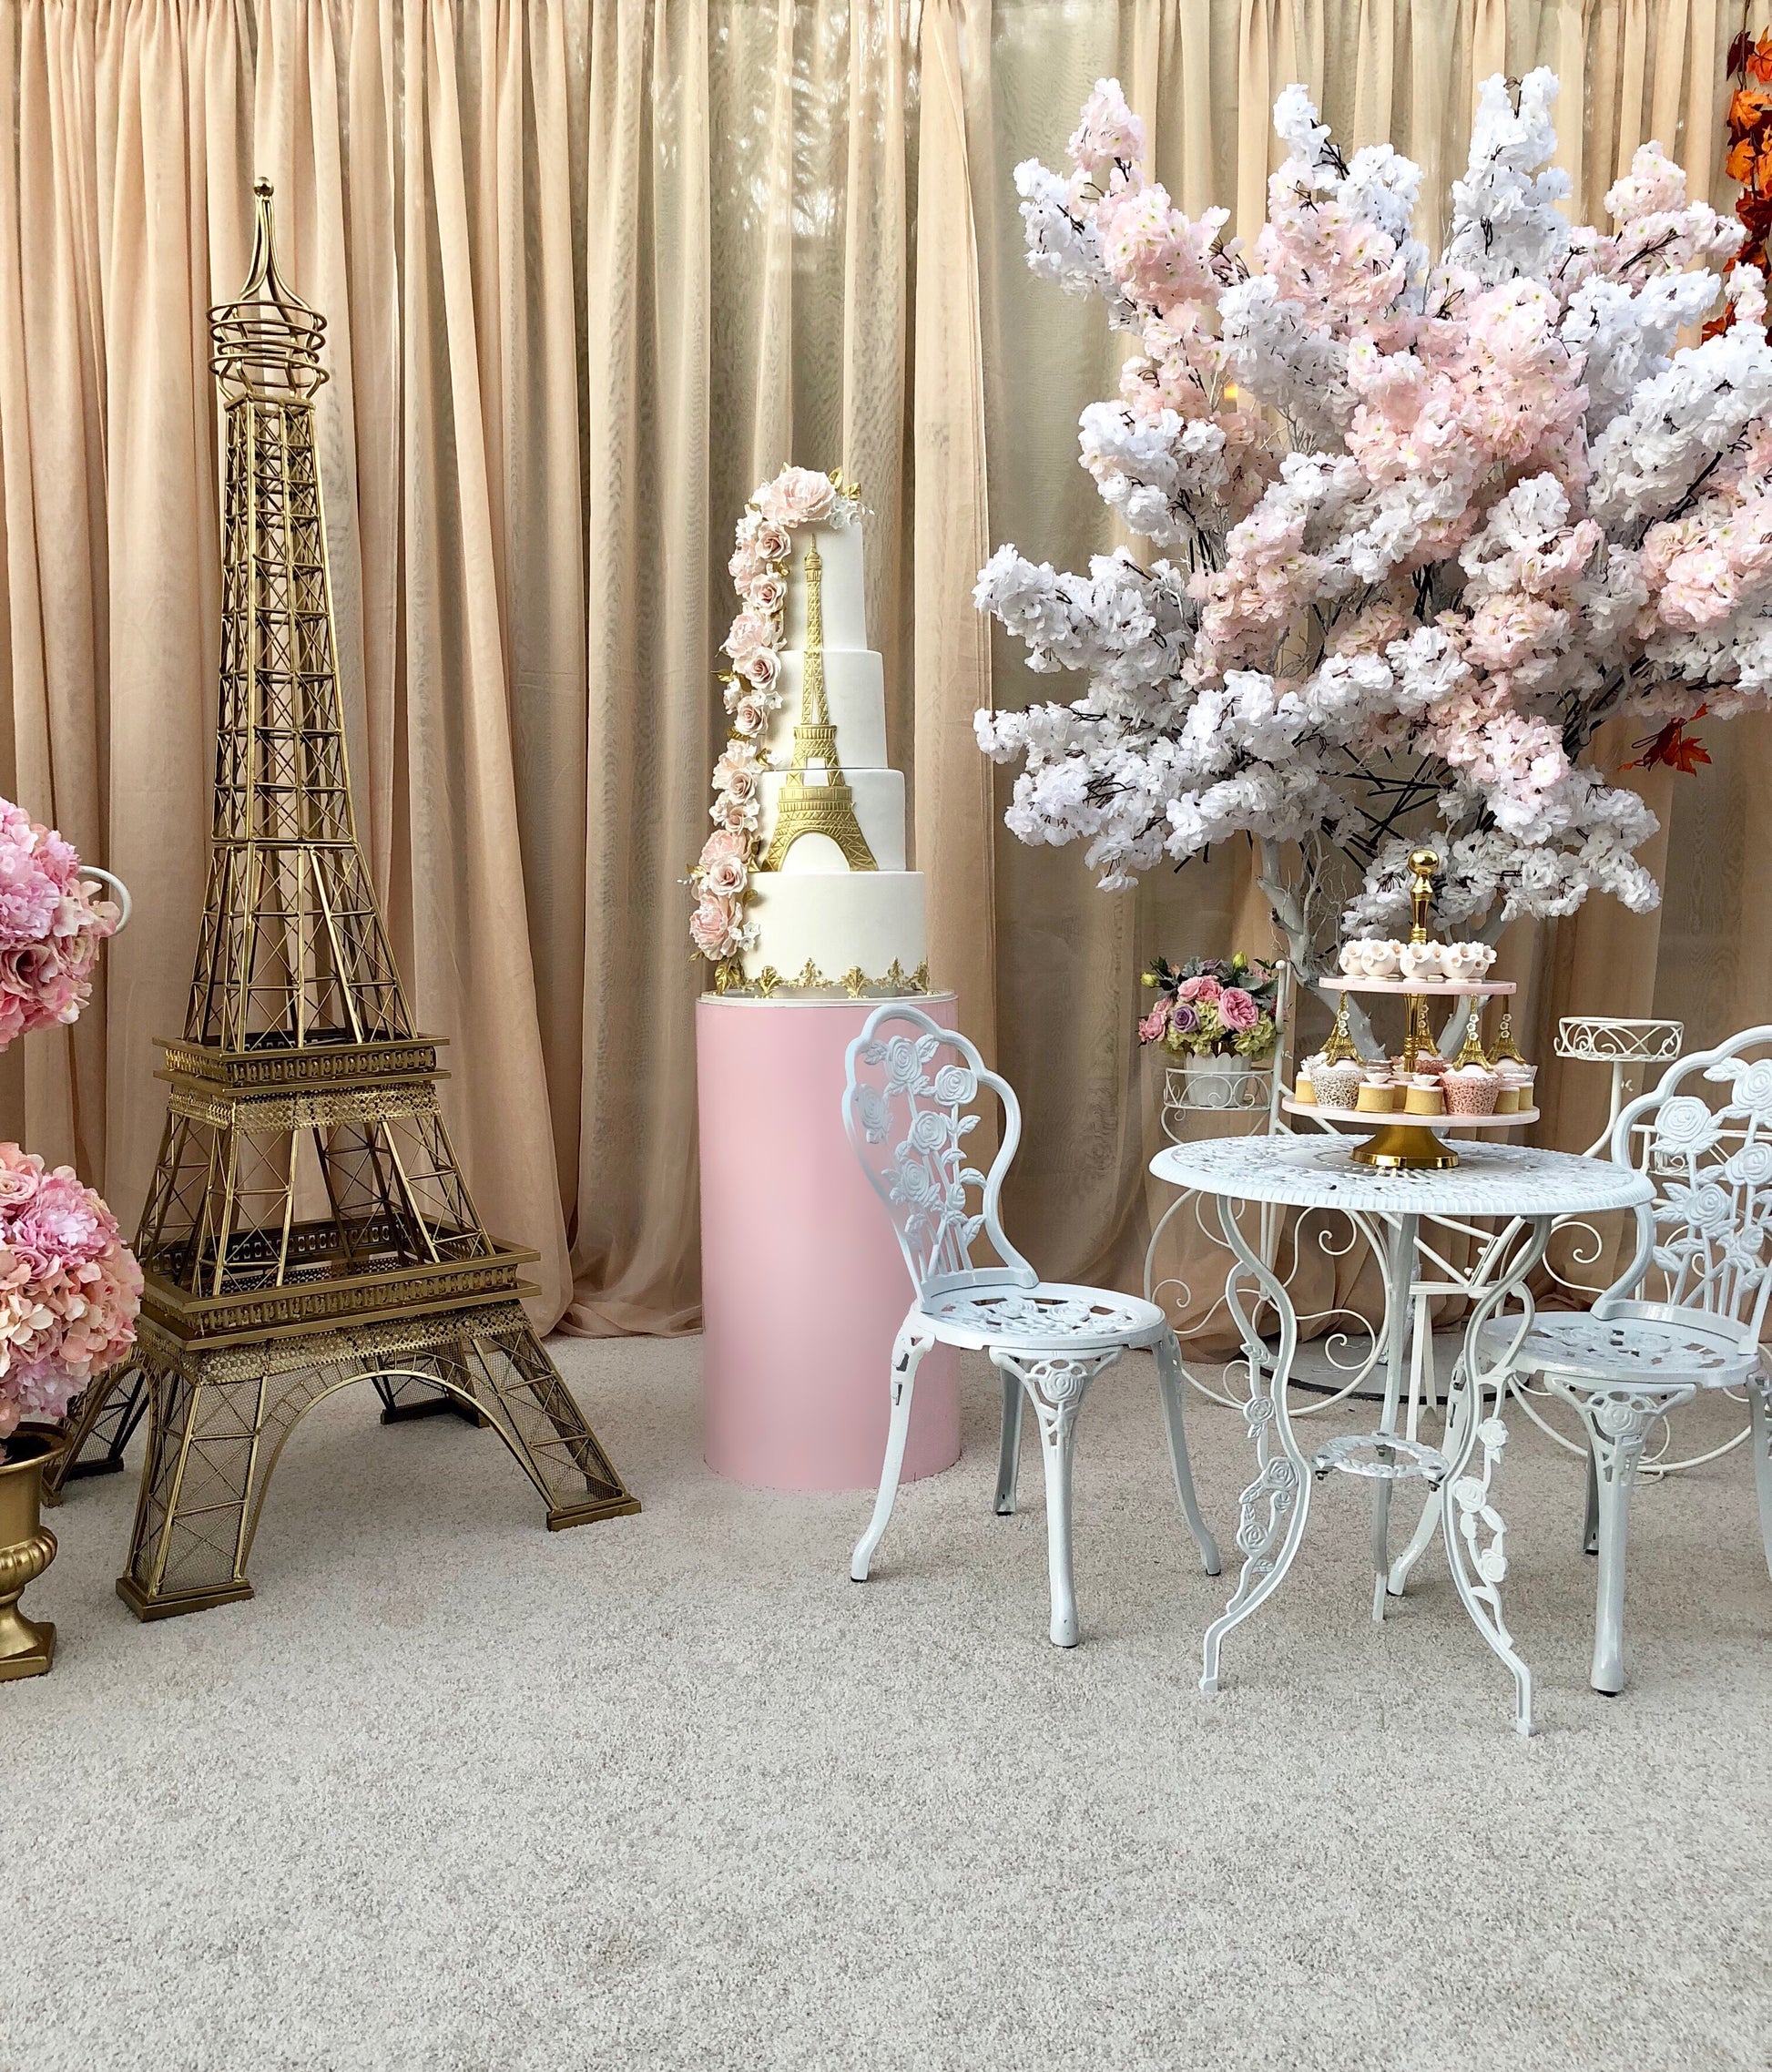 Eiffel Tower Vase Rentals - Just 4 Fun Party Rentals